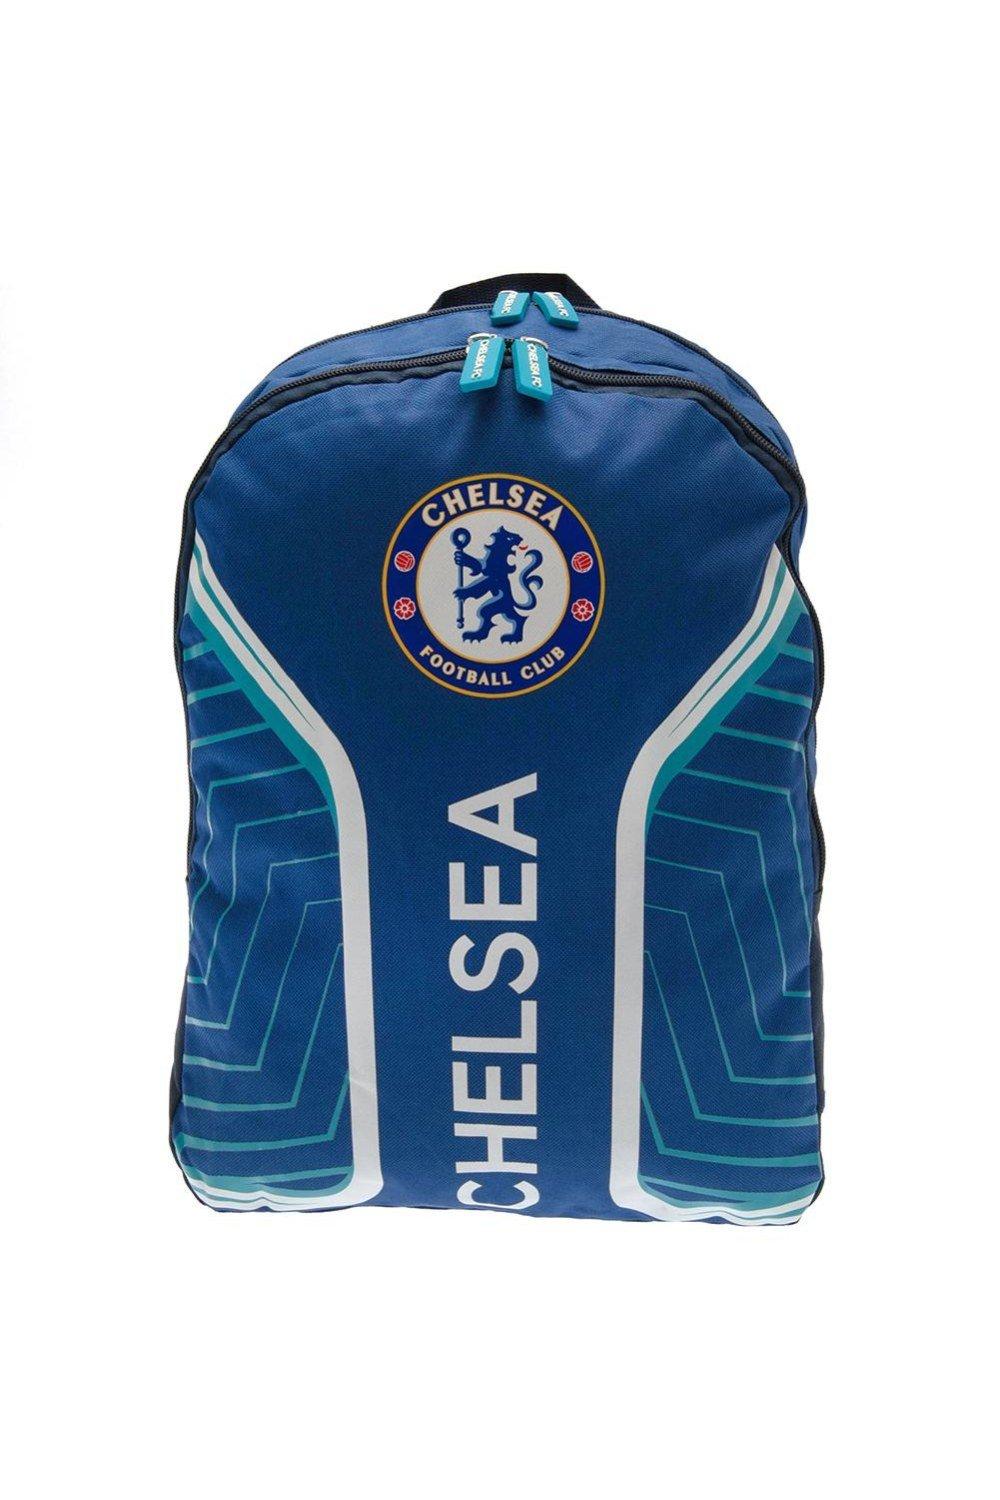 Флэш-рюкзак Chelsea FC, синий 1 шт застежка молния гемостатическая застежка молния быстрая застежка молния уличная портативная